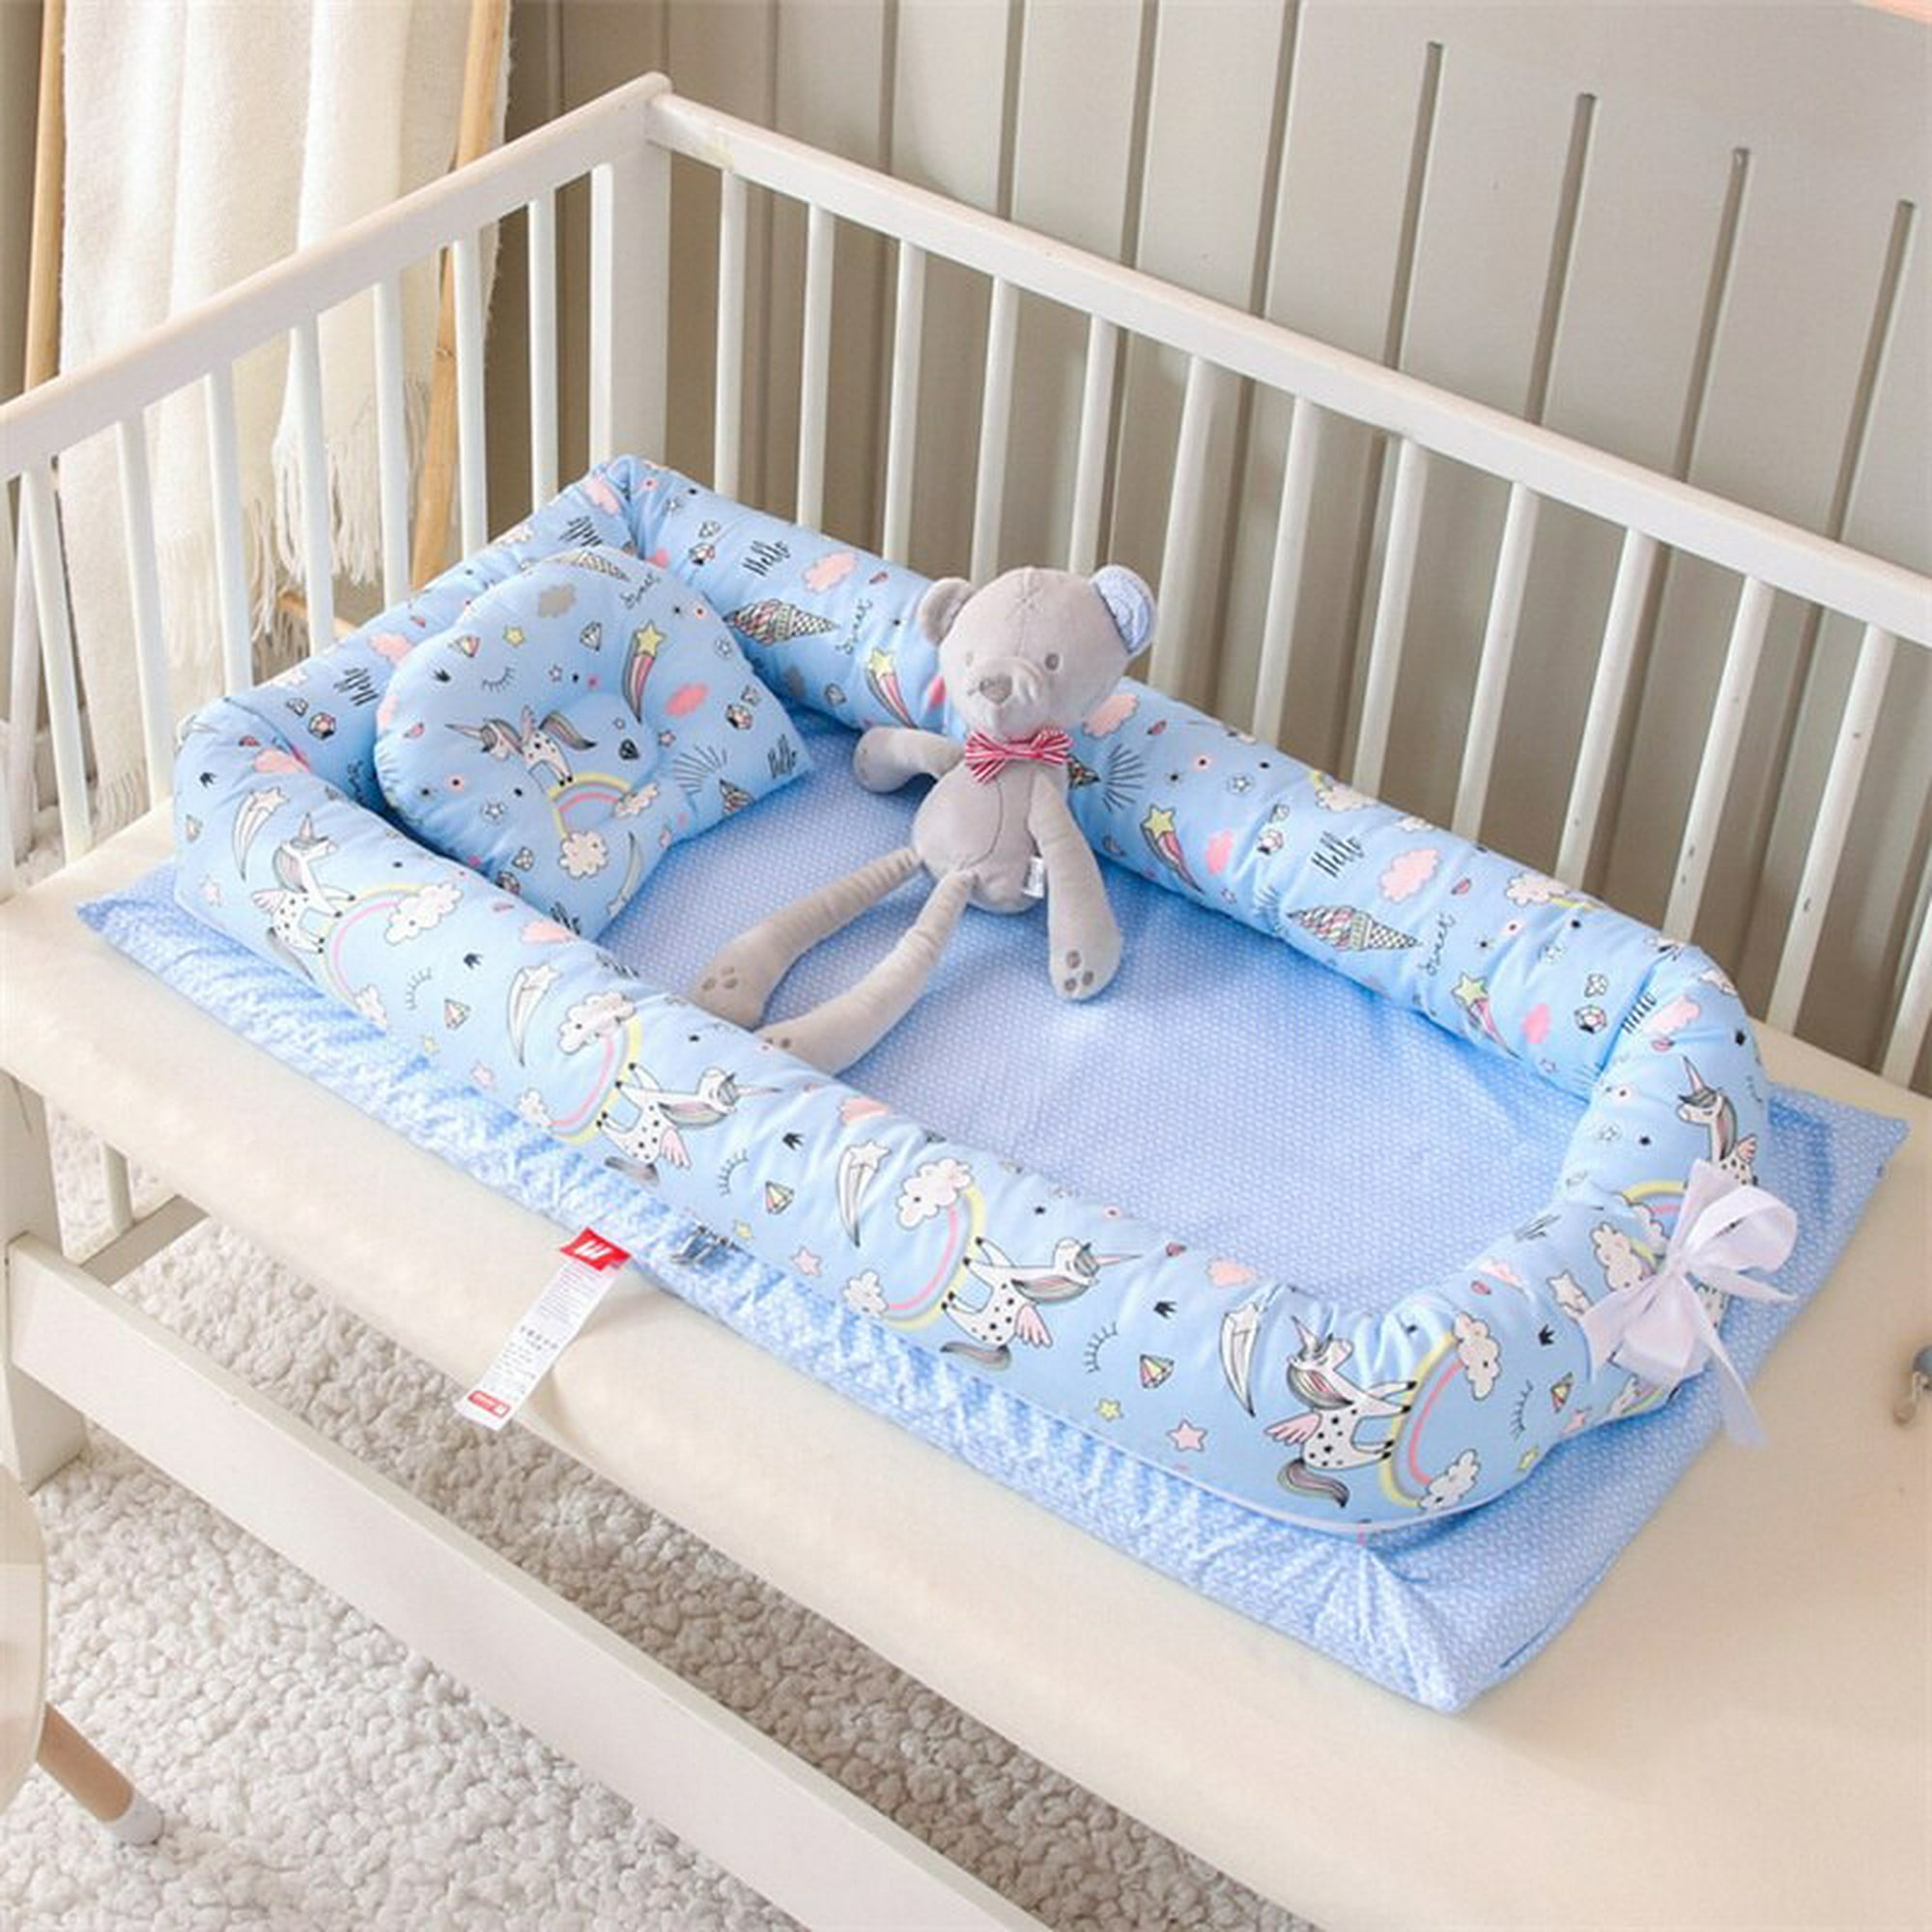 Cuna para bebé, cuna 3 en 1, cama portátil ajustable para bebé, bebé recién  nacido, cama imprescindible, color gris